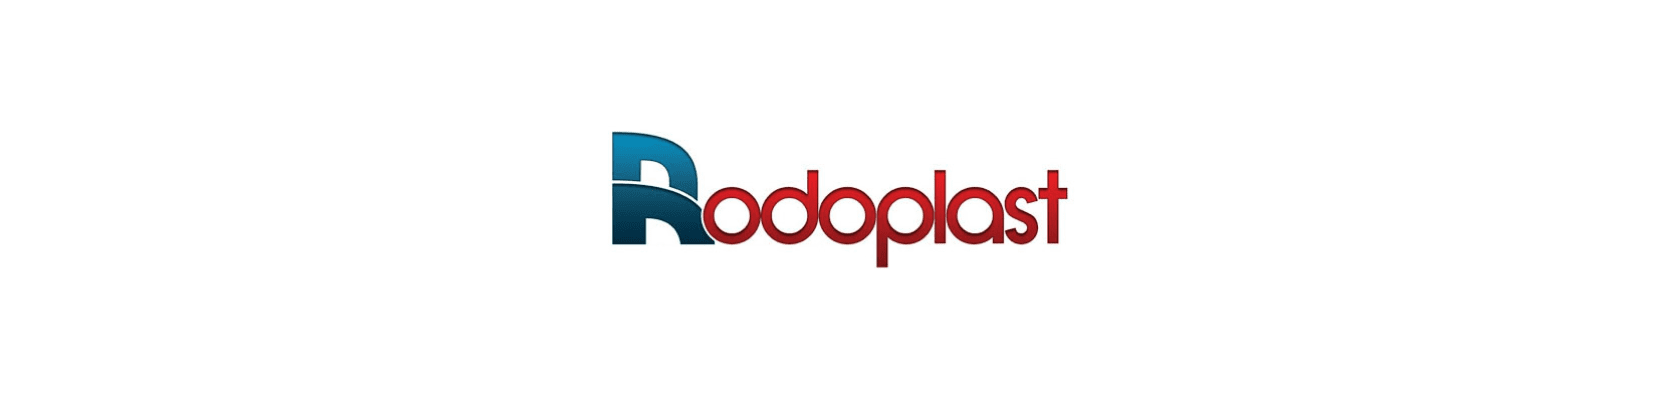 Rodoplast